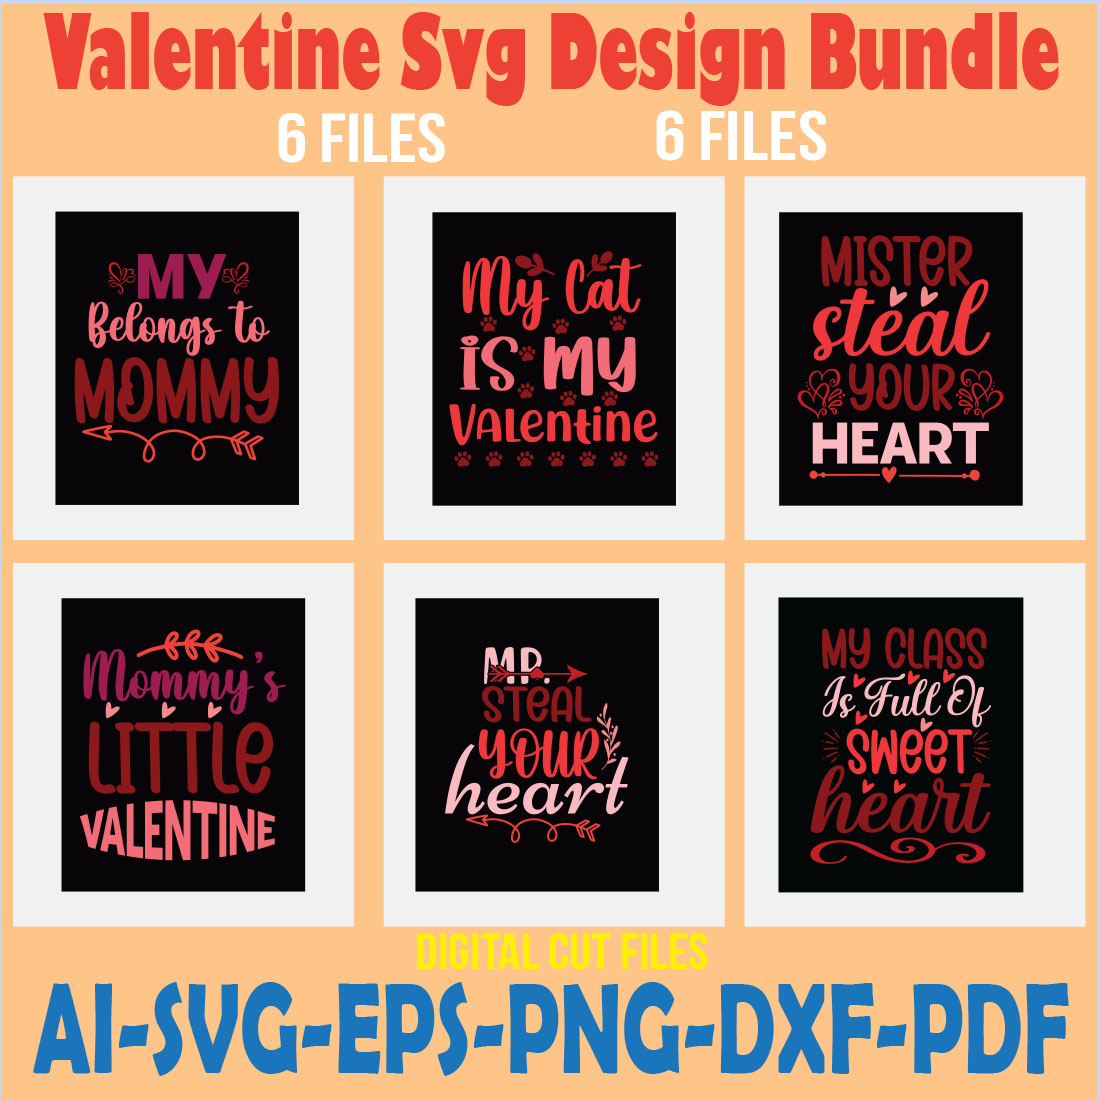 Valentine Svg Design Bundle cover image.